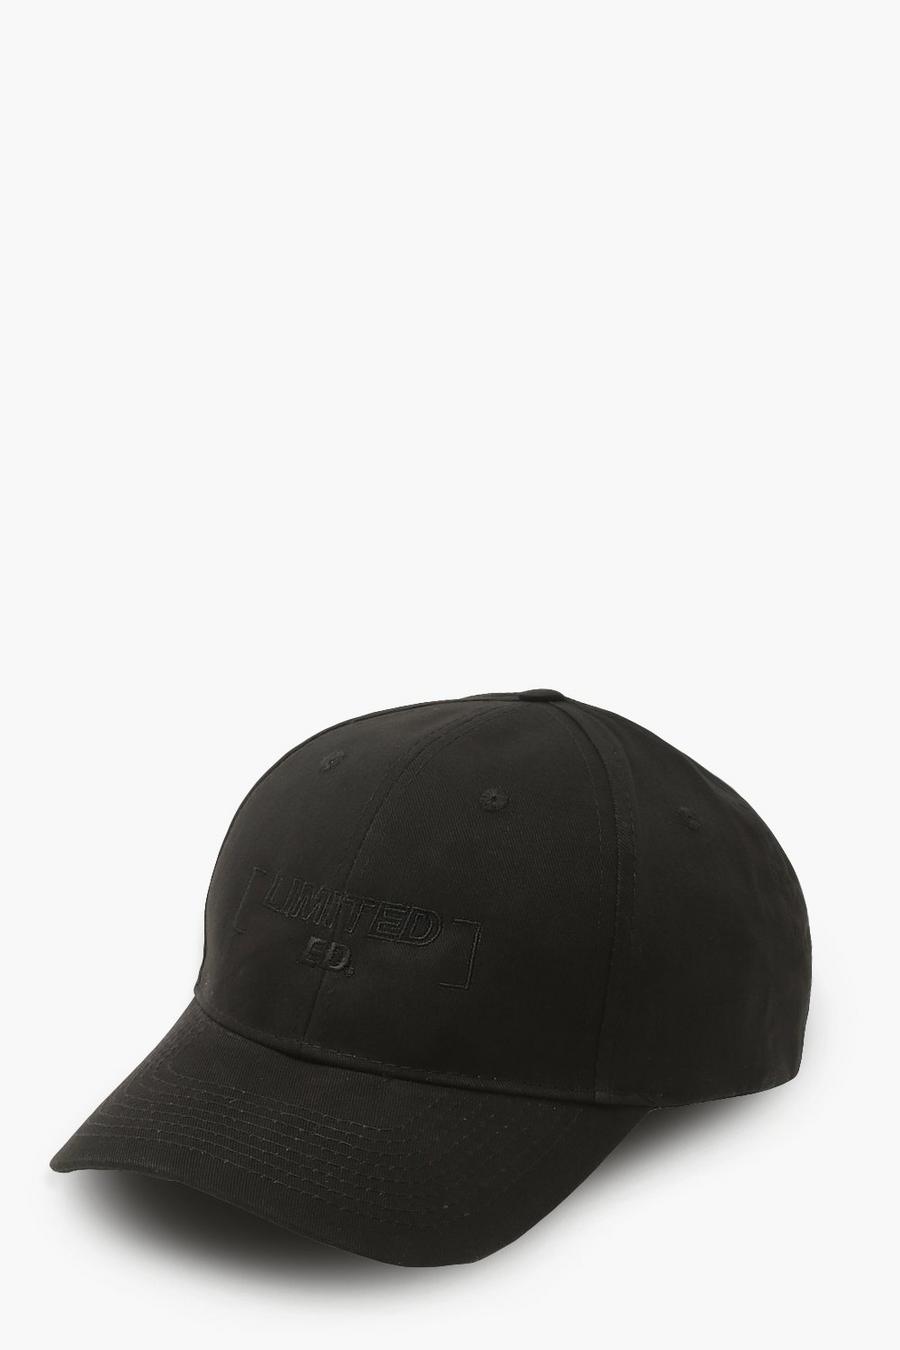 Black Limited Edition Branded Cap image number 1